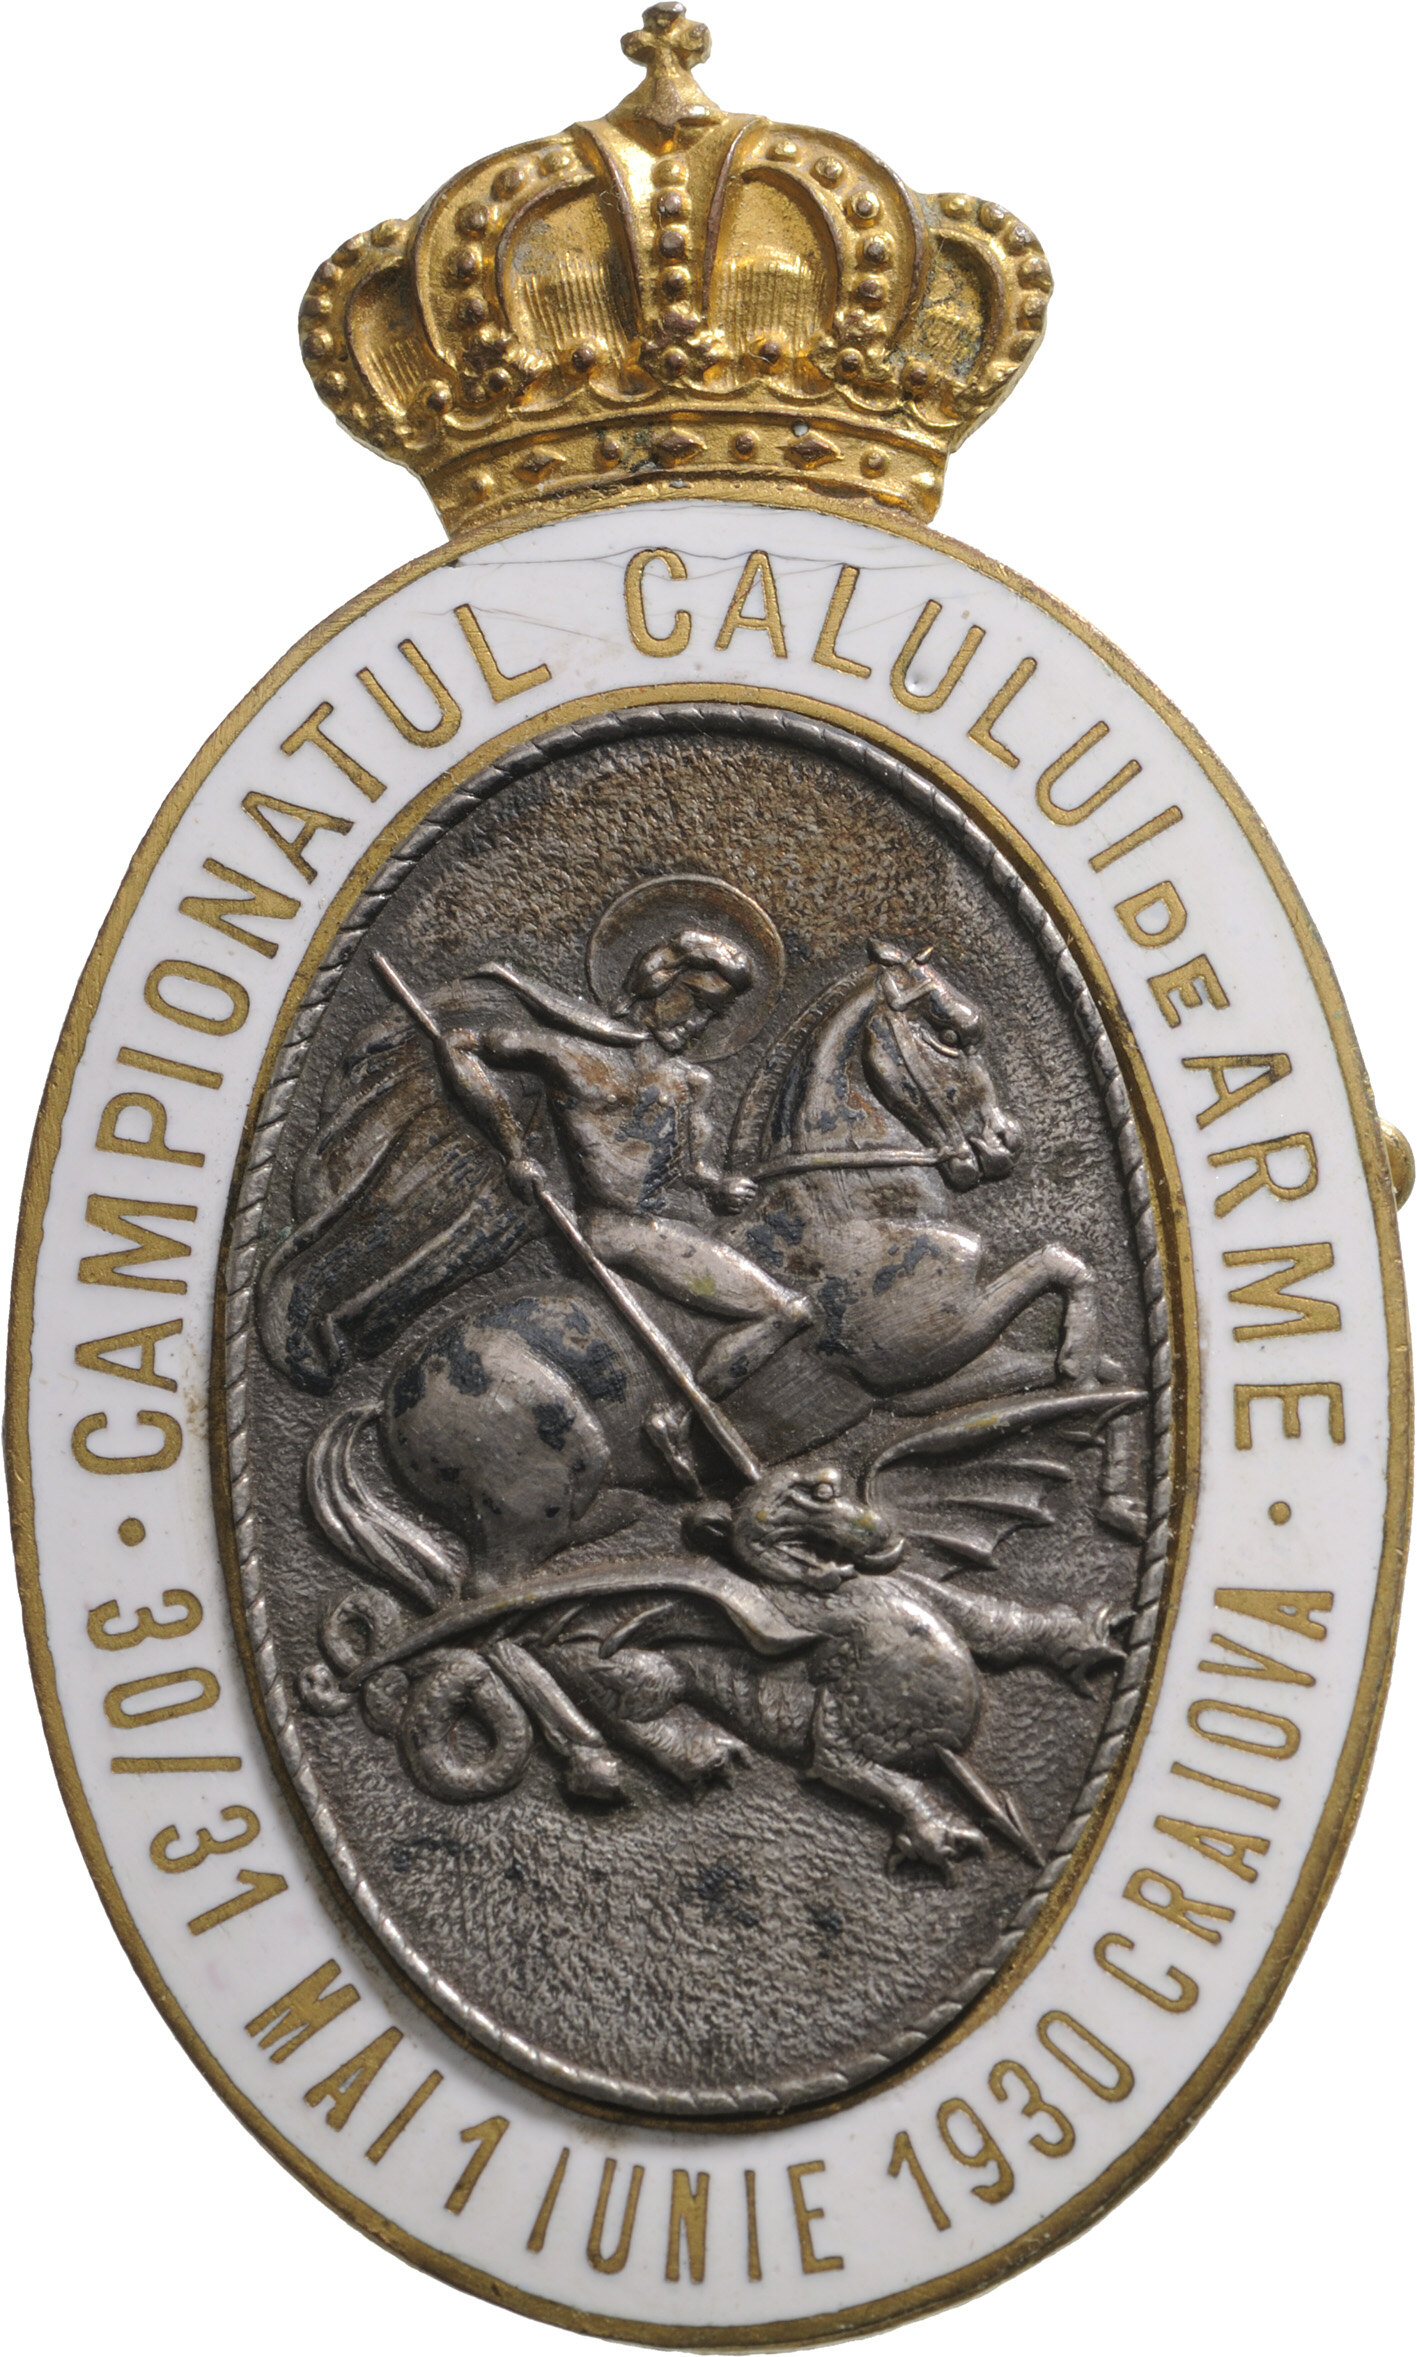 War Horse Championship Badge, Craiova 1930